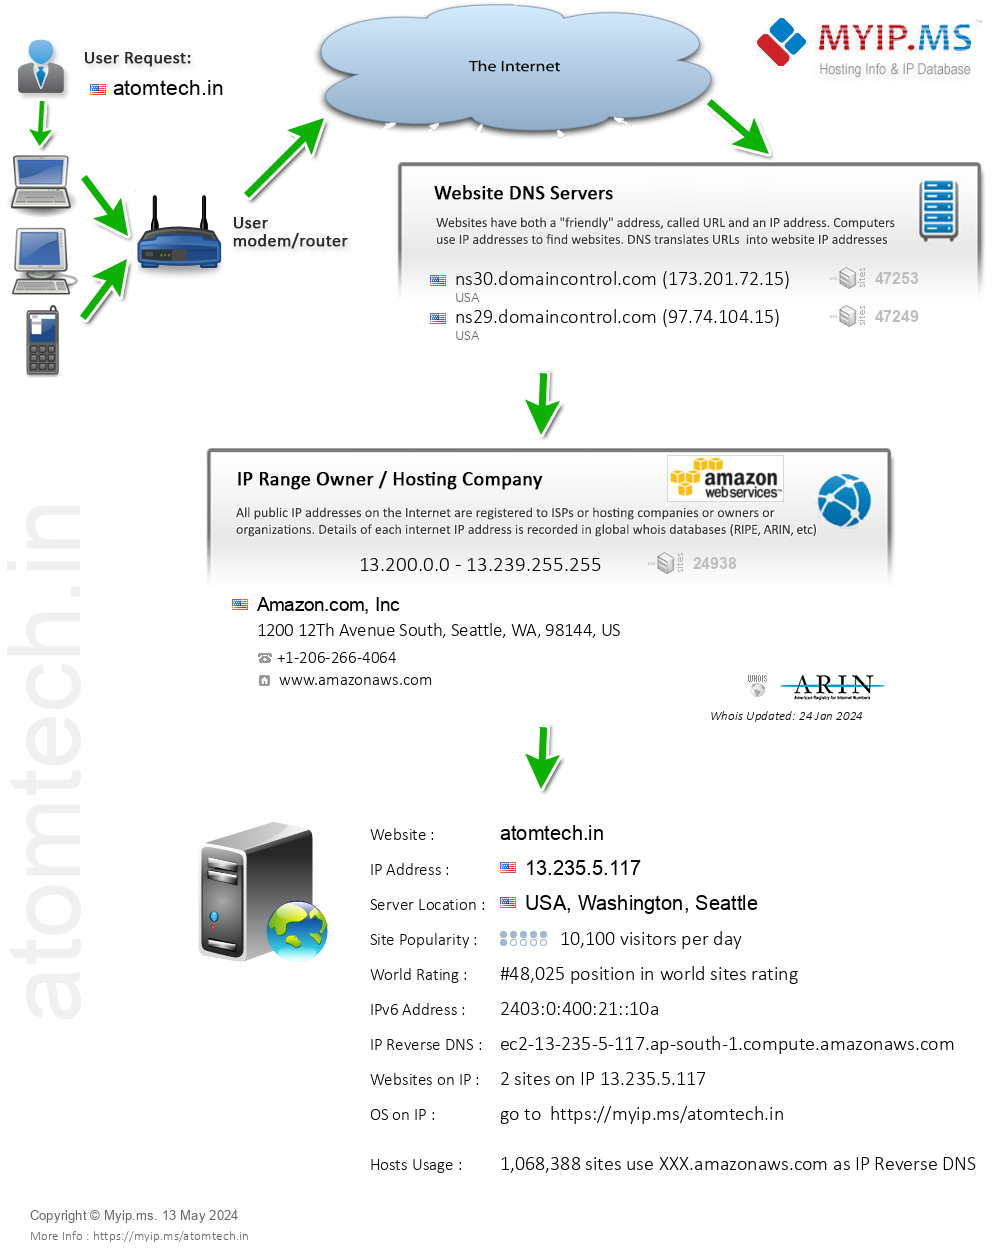 Atomtech.in - Website Hosting Visual IP Diagram